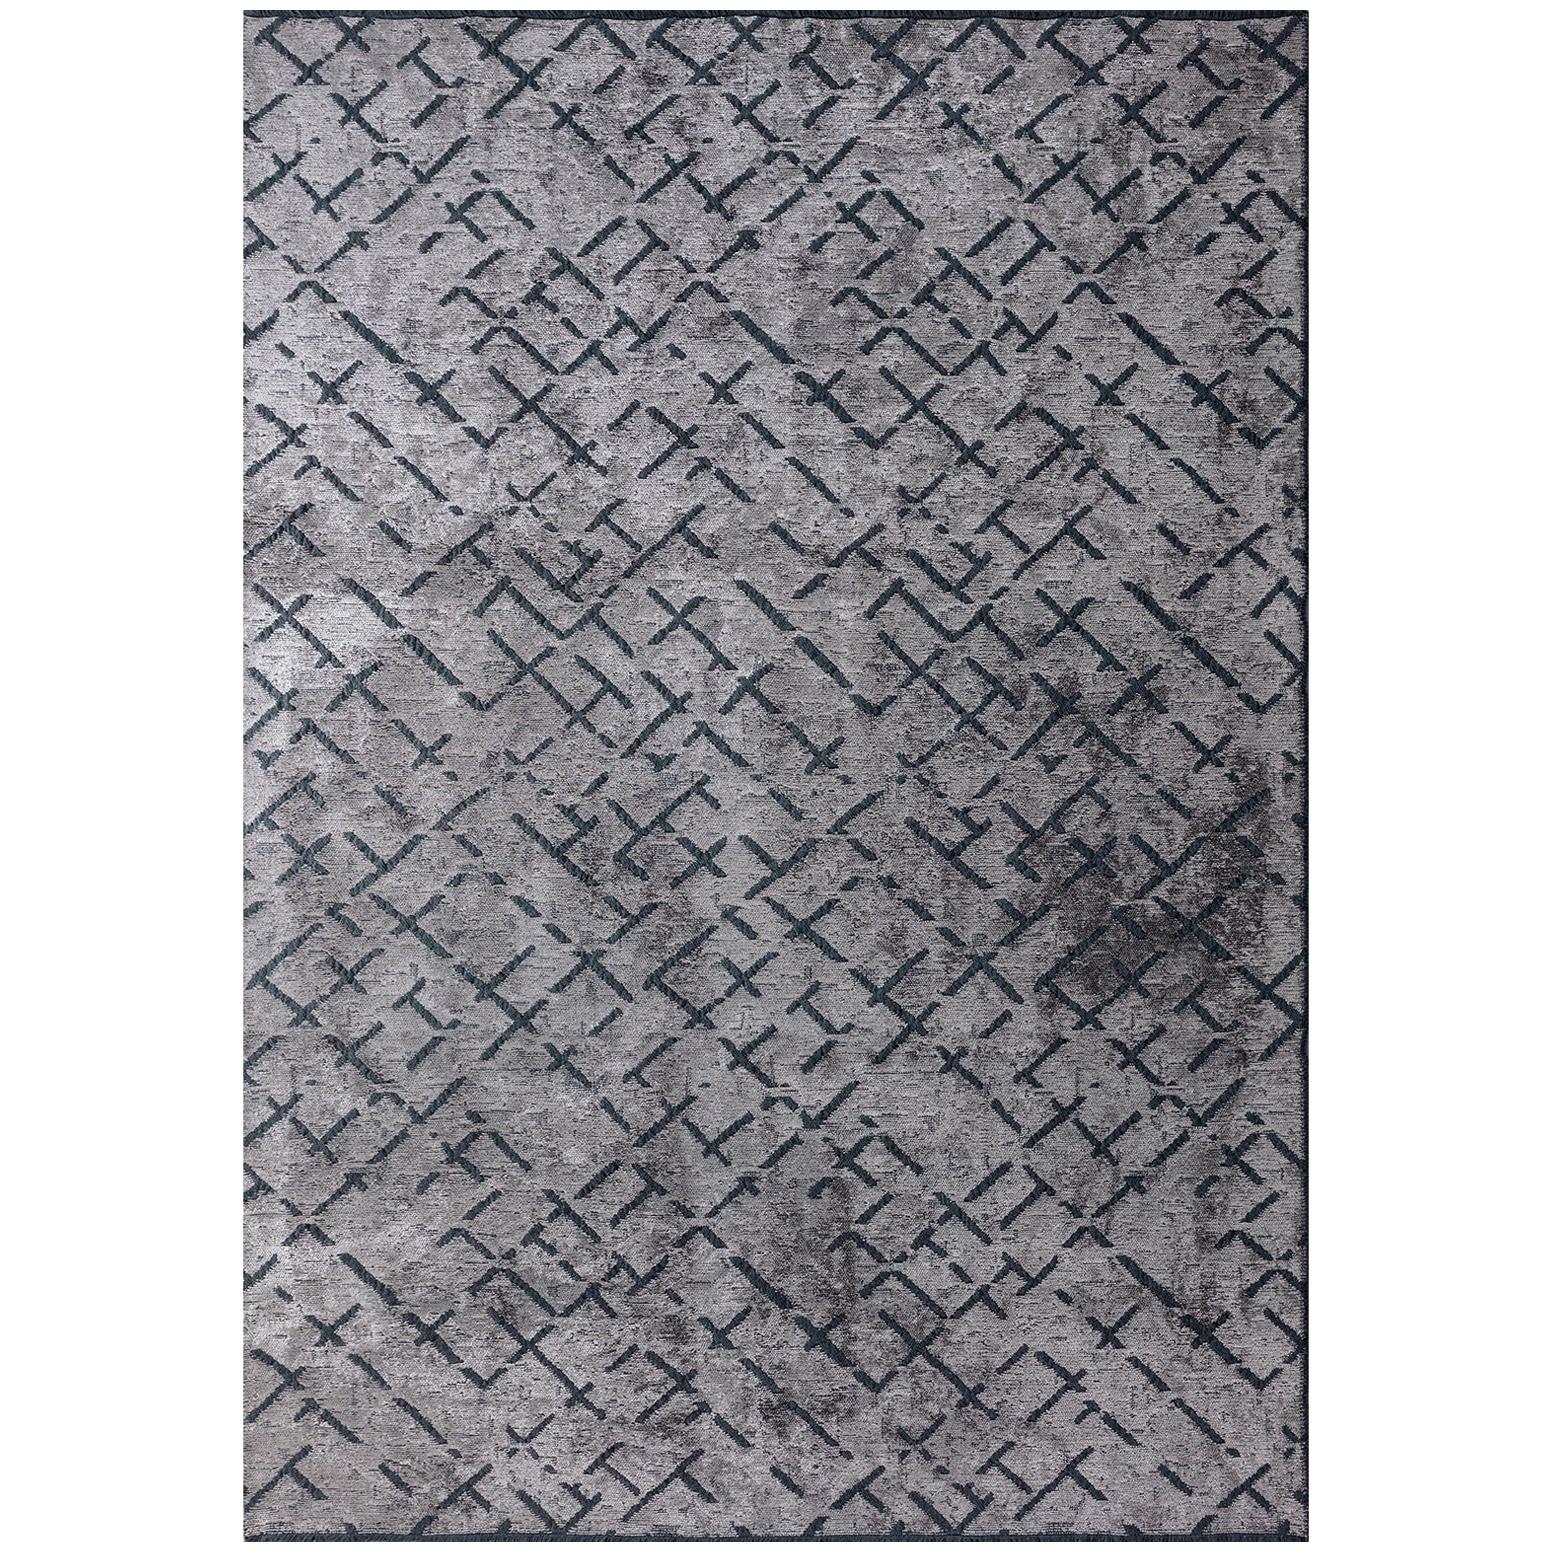 Tapis contemporain gris argenté à motif répétitif abstrait avec ou sans franges en vente